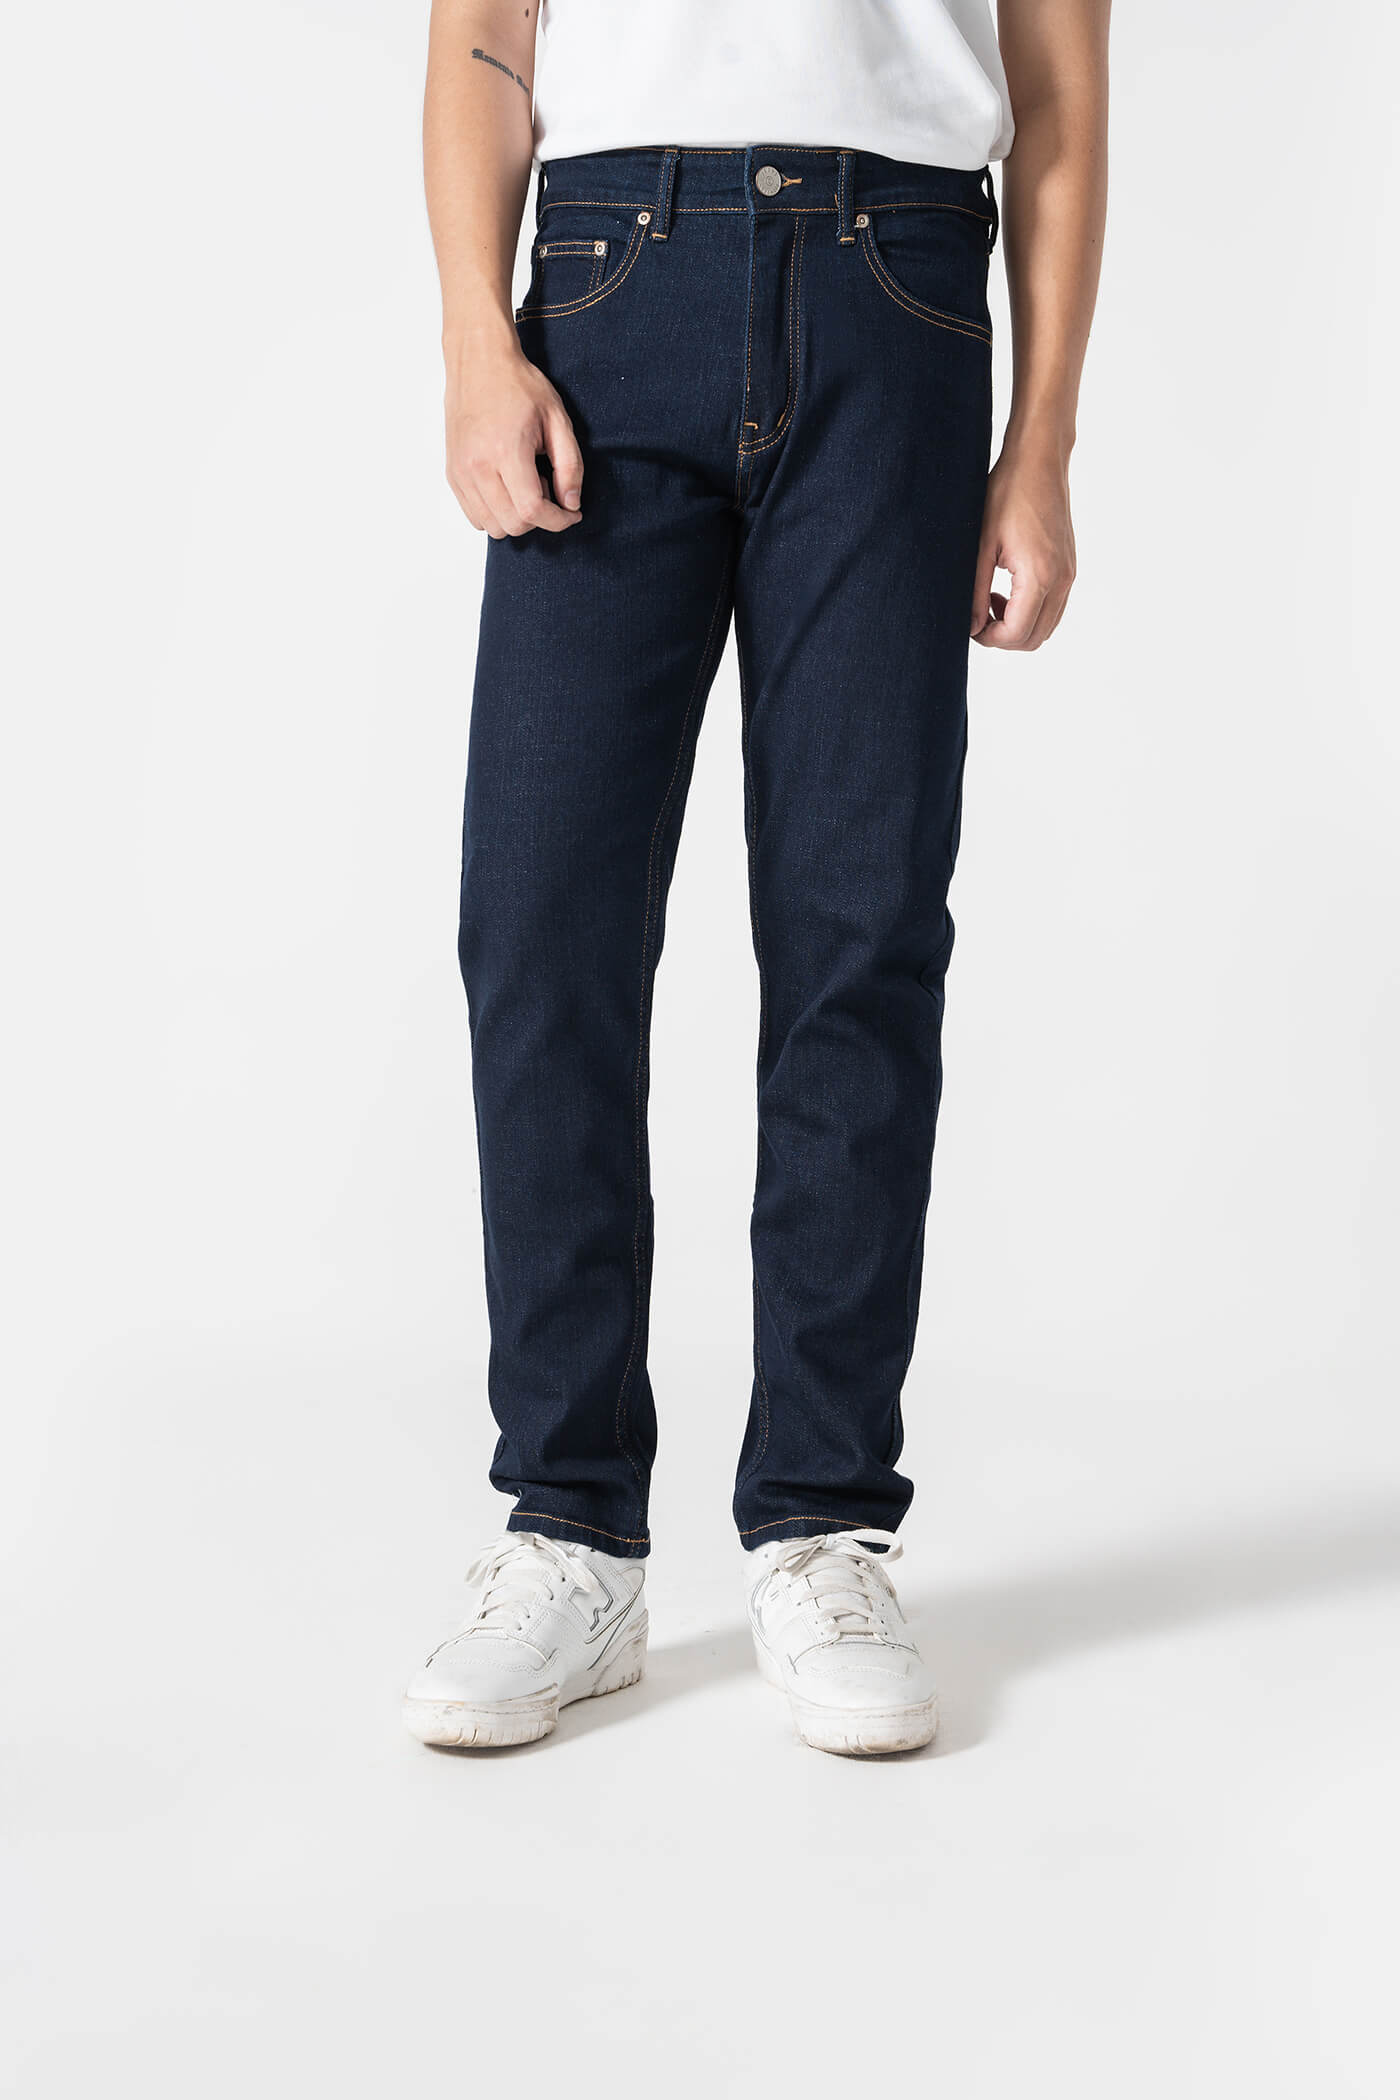 Quần Jeans Nam dáng Slim Fit V2 xanh-garment